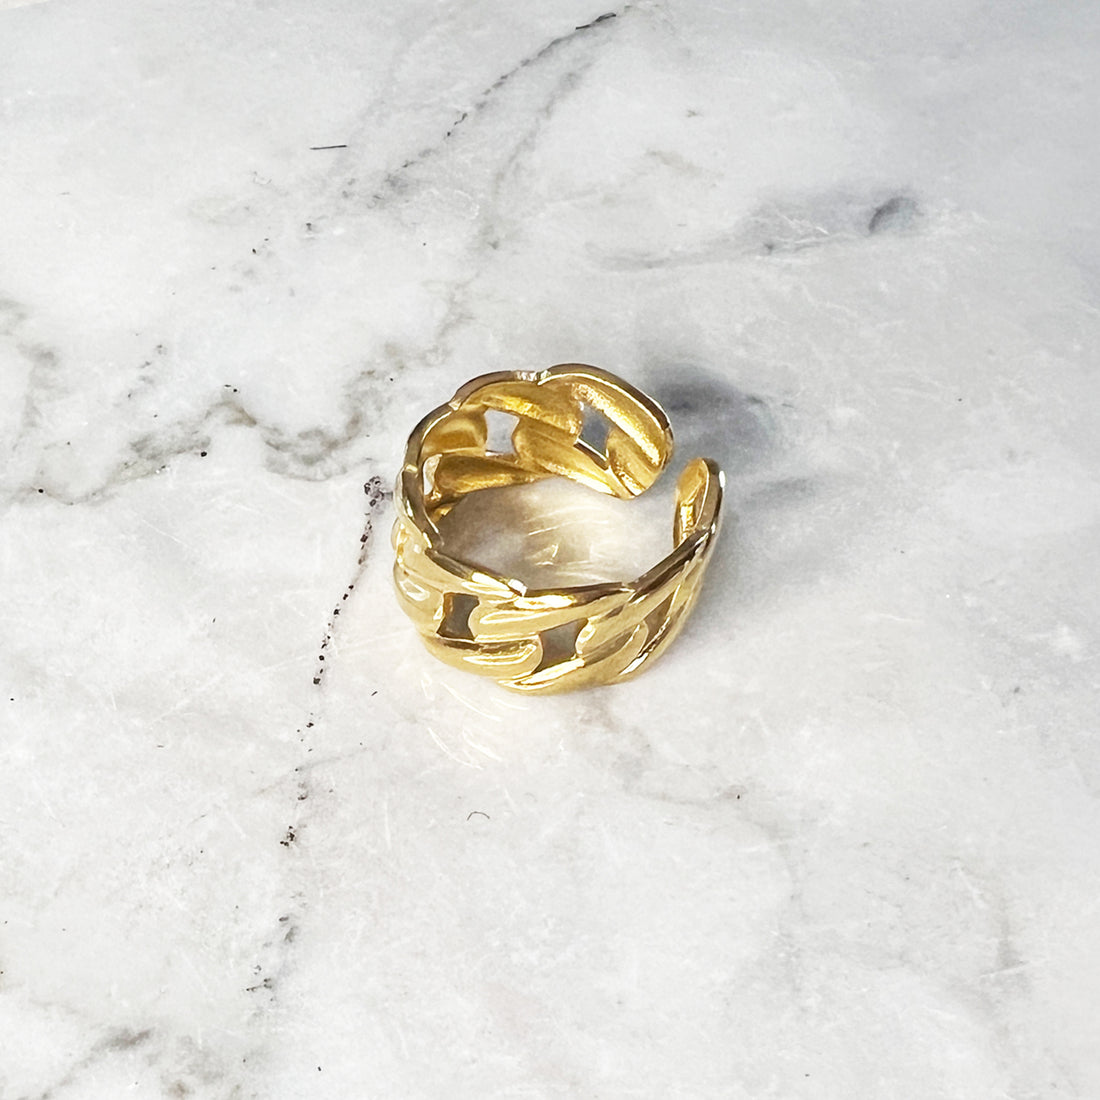 Gouden brede chain ring. De ring is one-size en verstelbaar. De ring is gemaakt van gold plated stainless steel materiaal en kan je lichtjes buigen naar de gewenste maat.